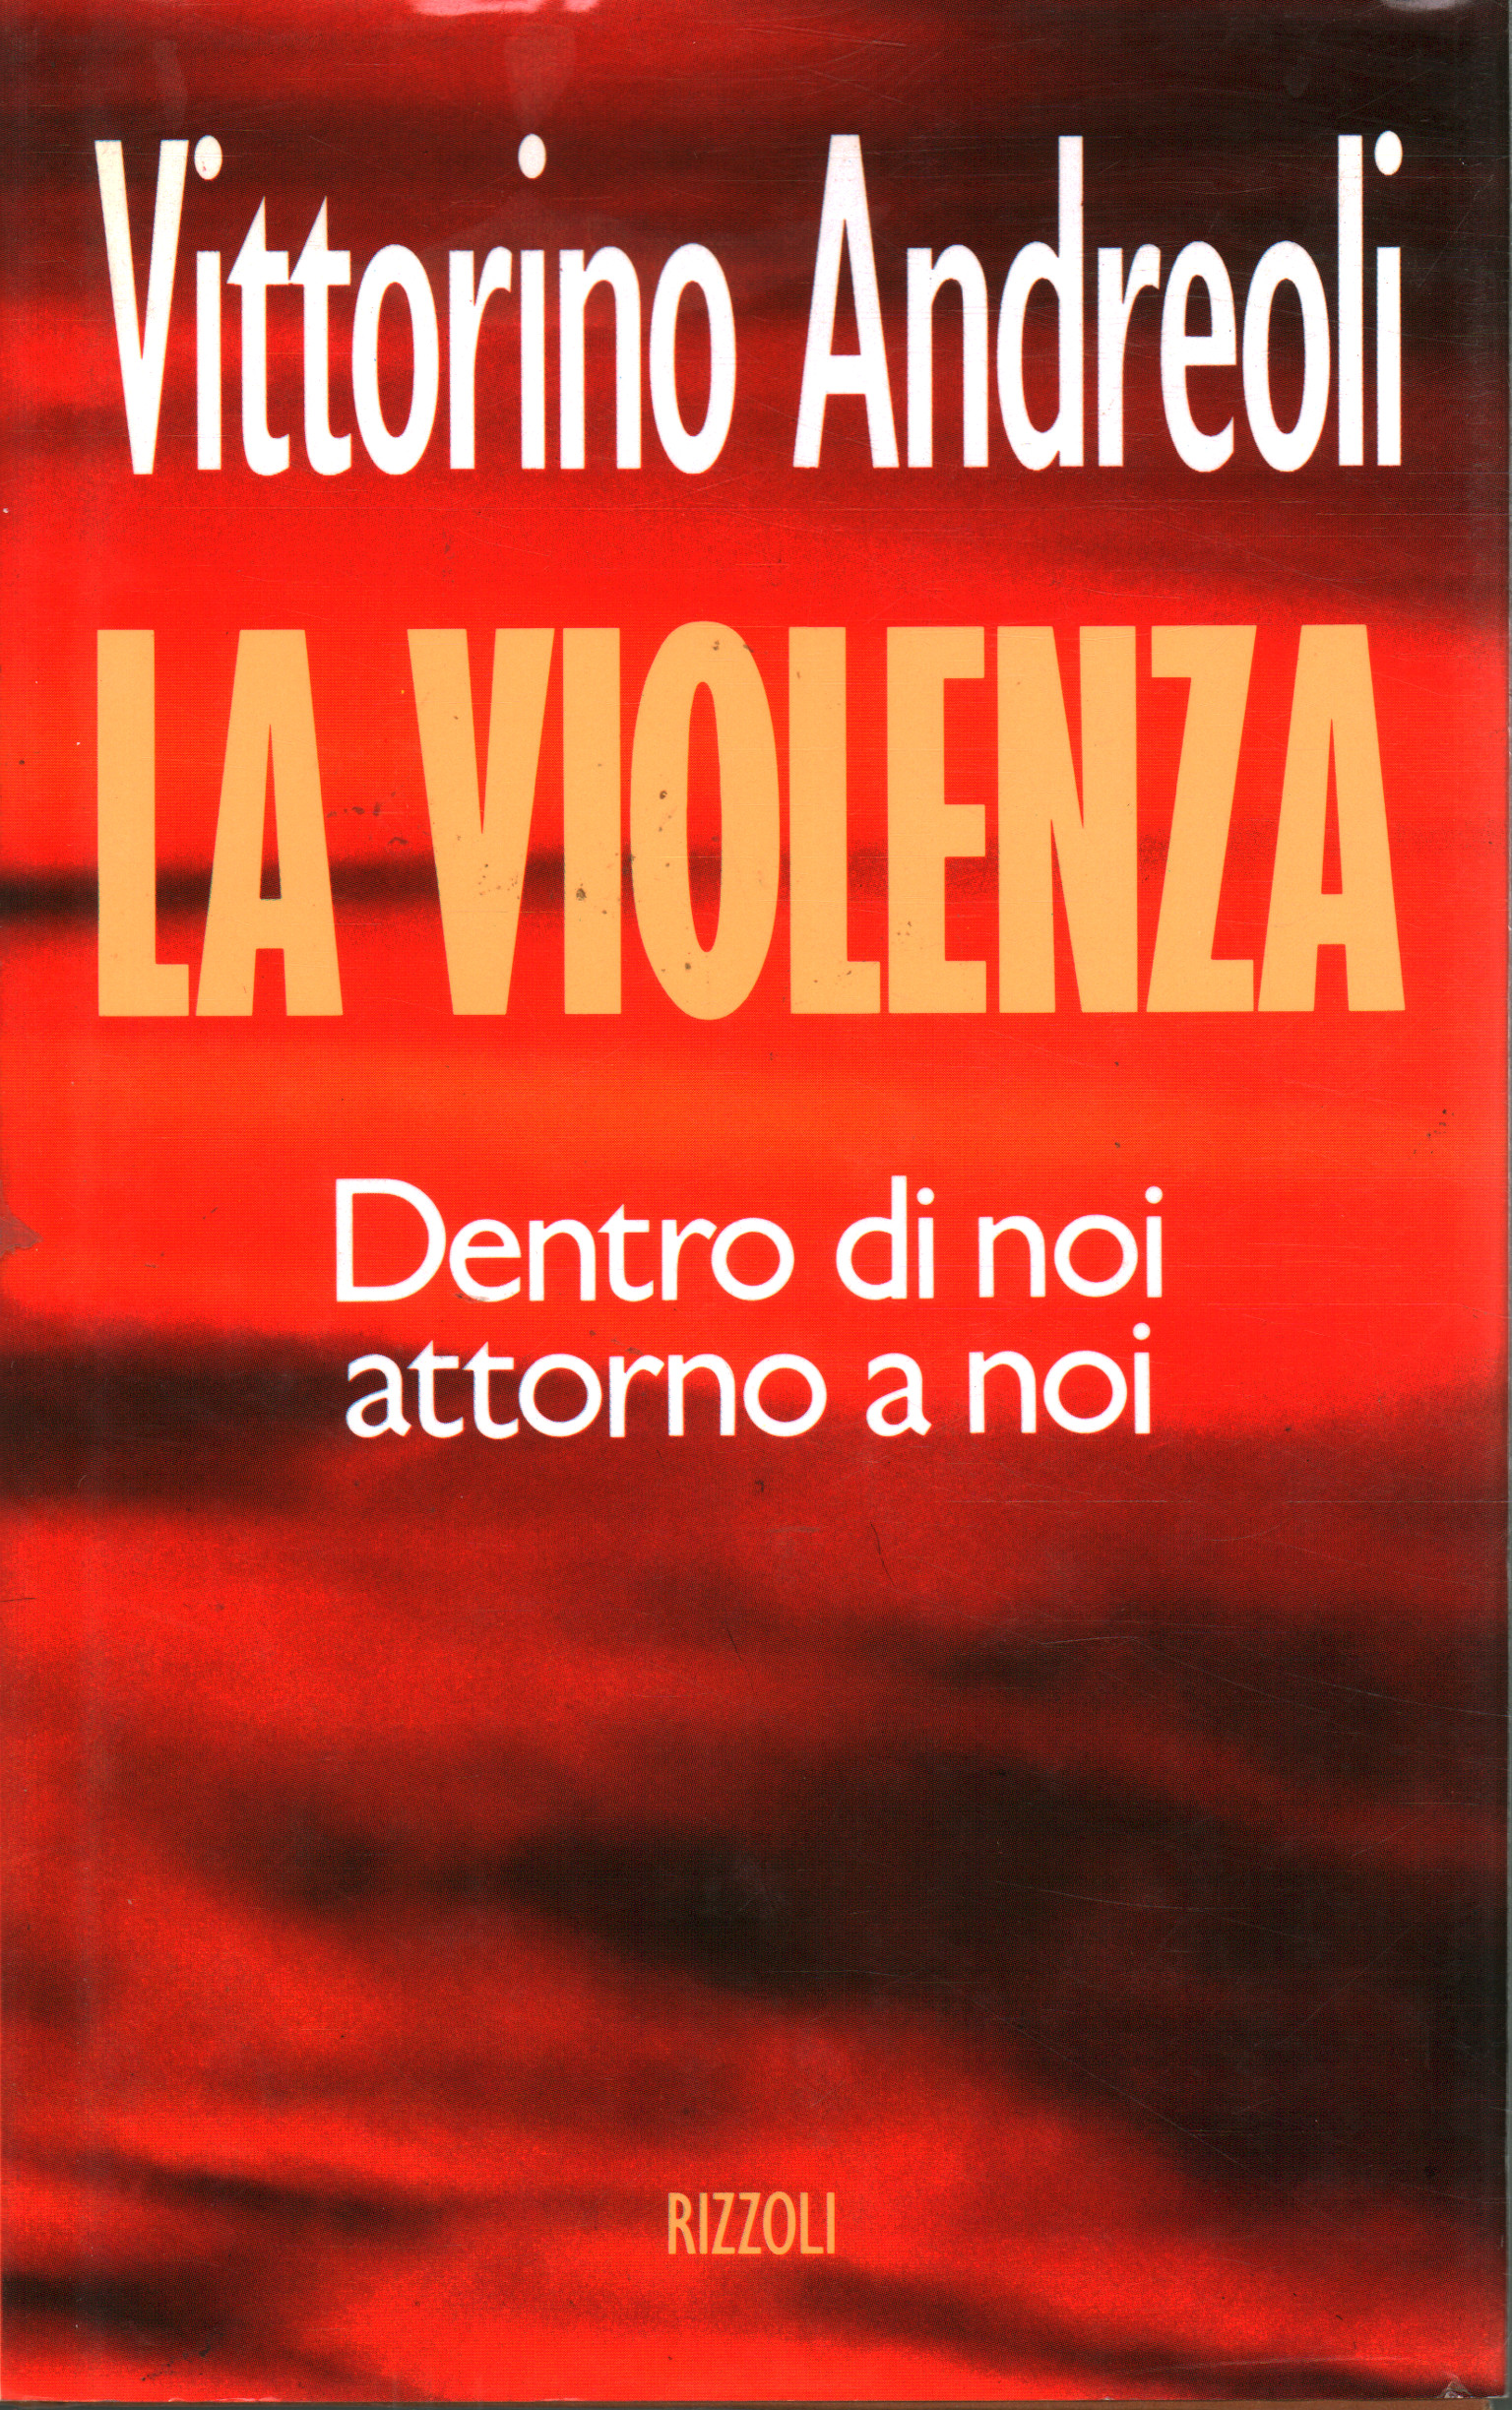 La violenza, Vittorino Andreoli